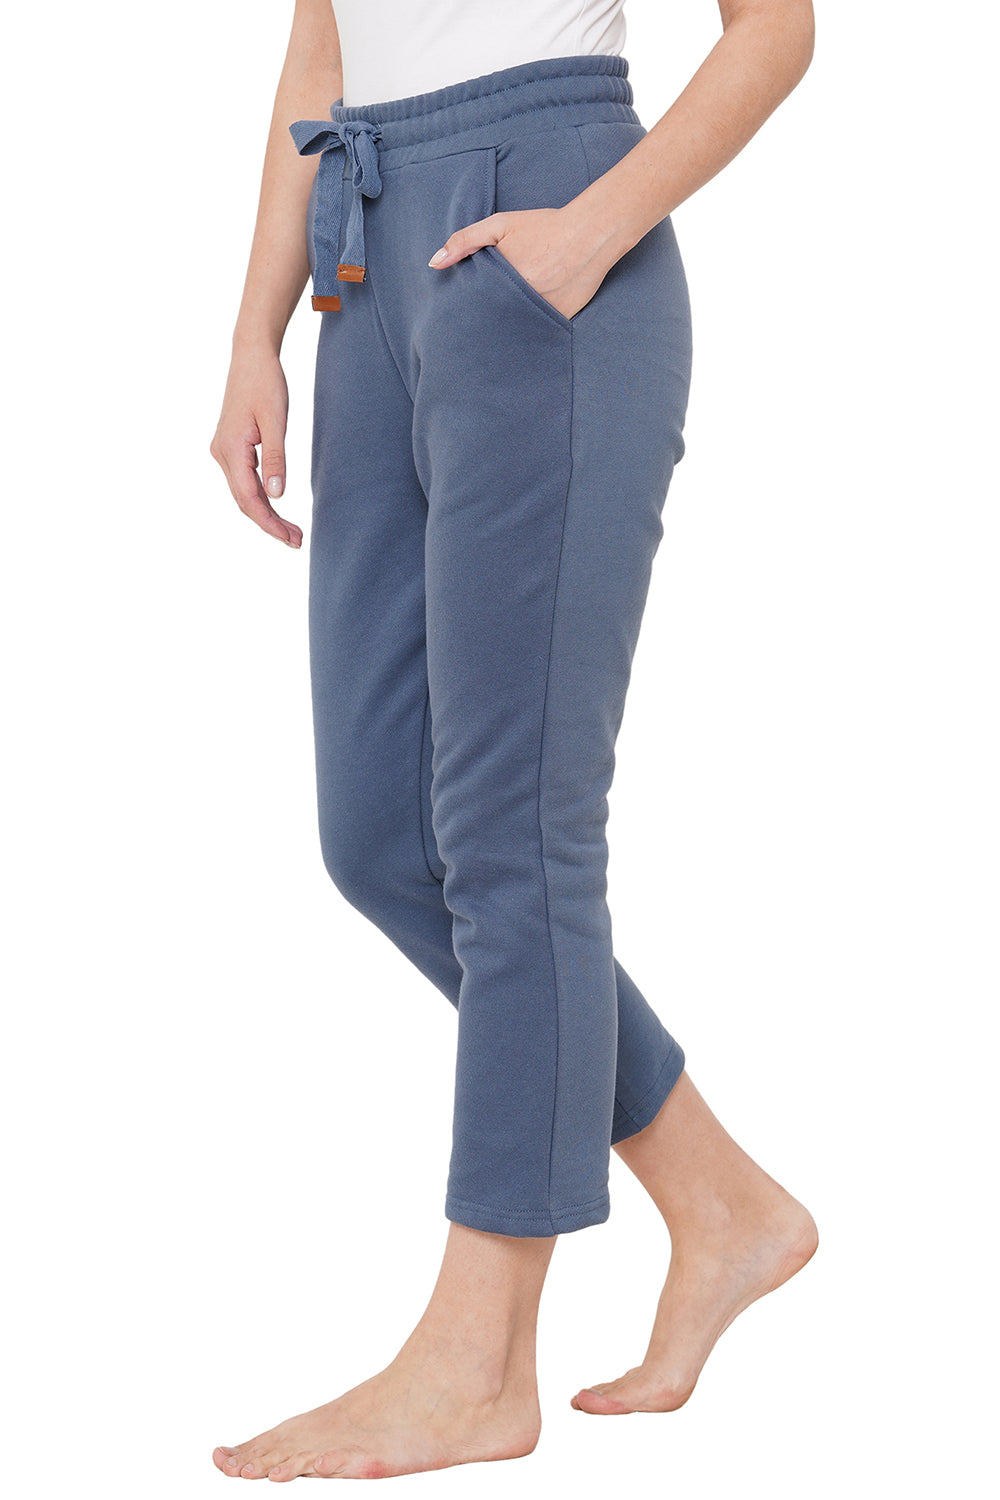 Organic Cotton Pajama-ISL040-Greyish Blue